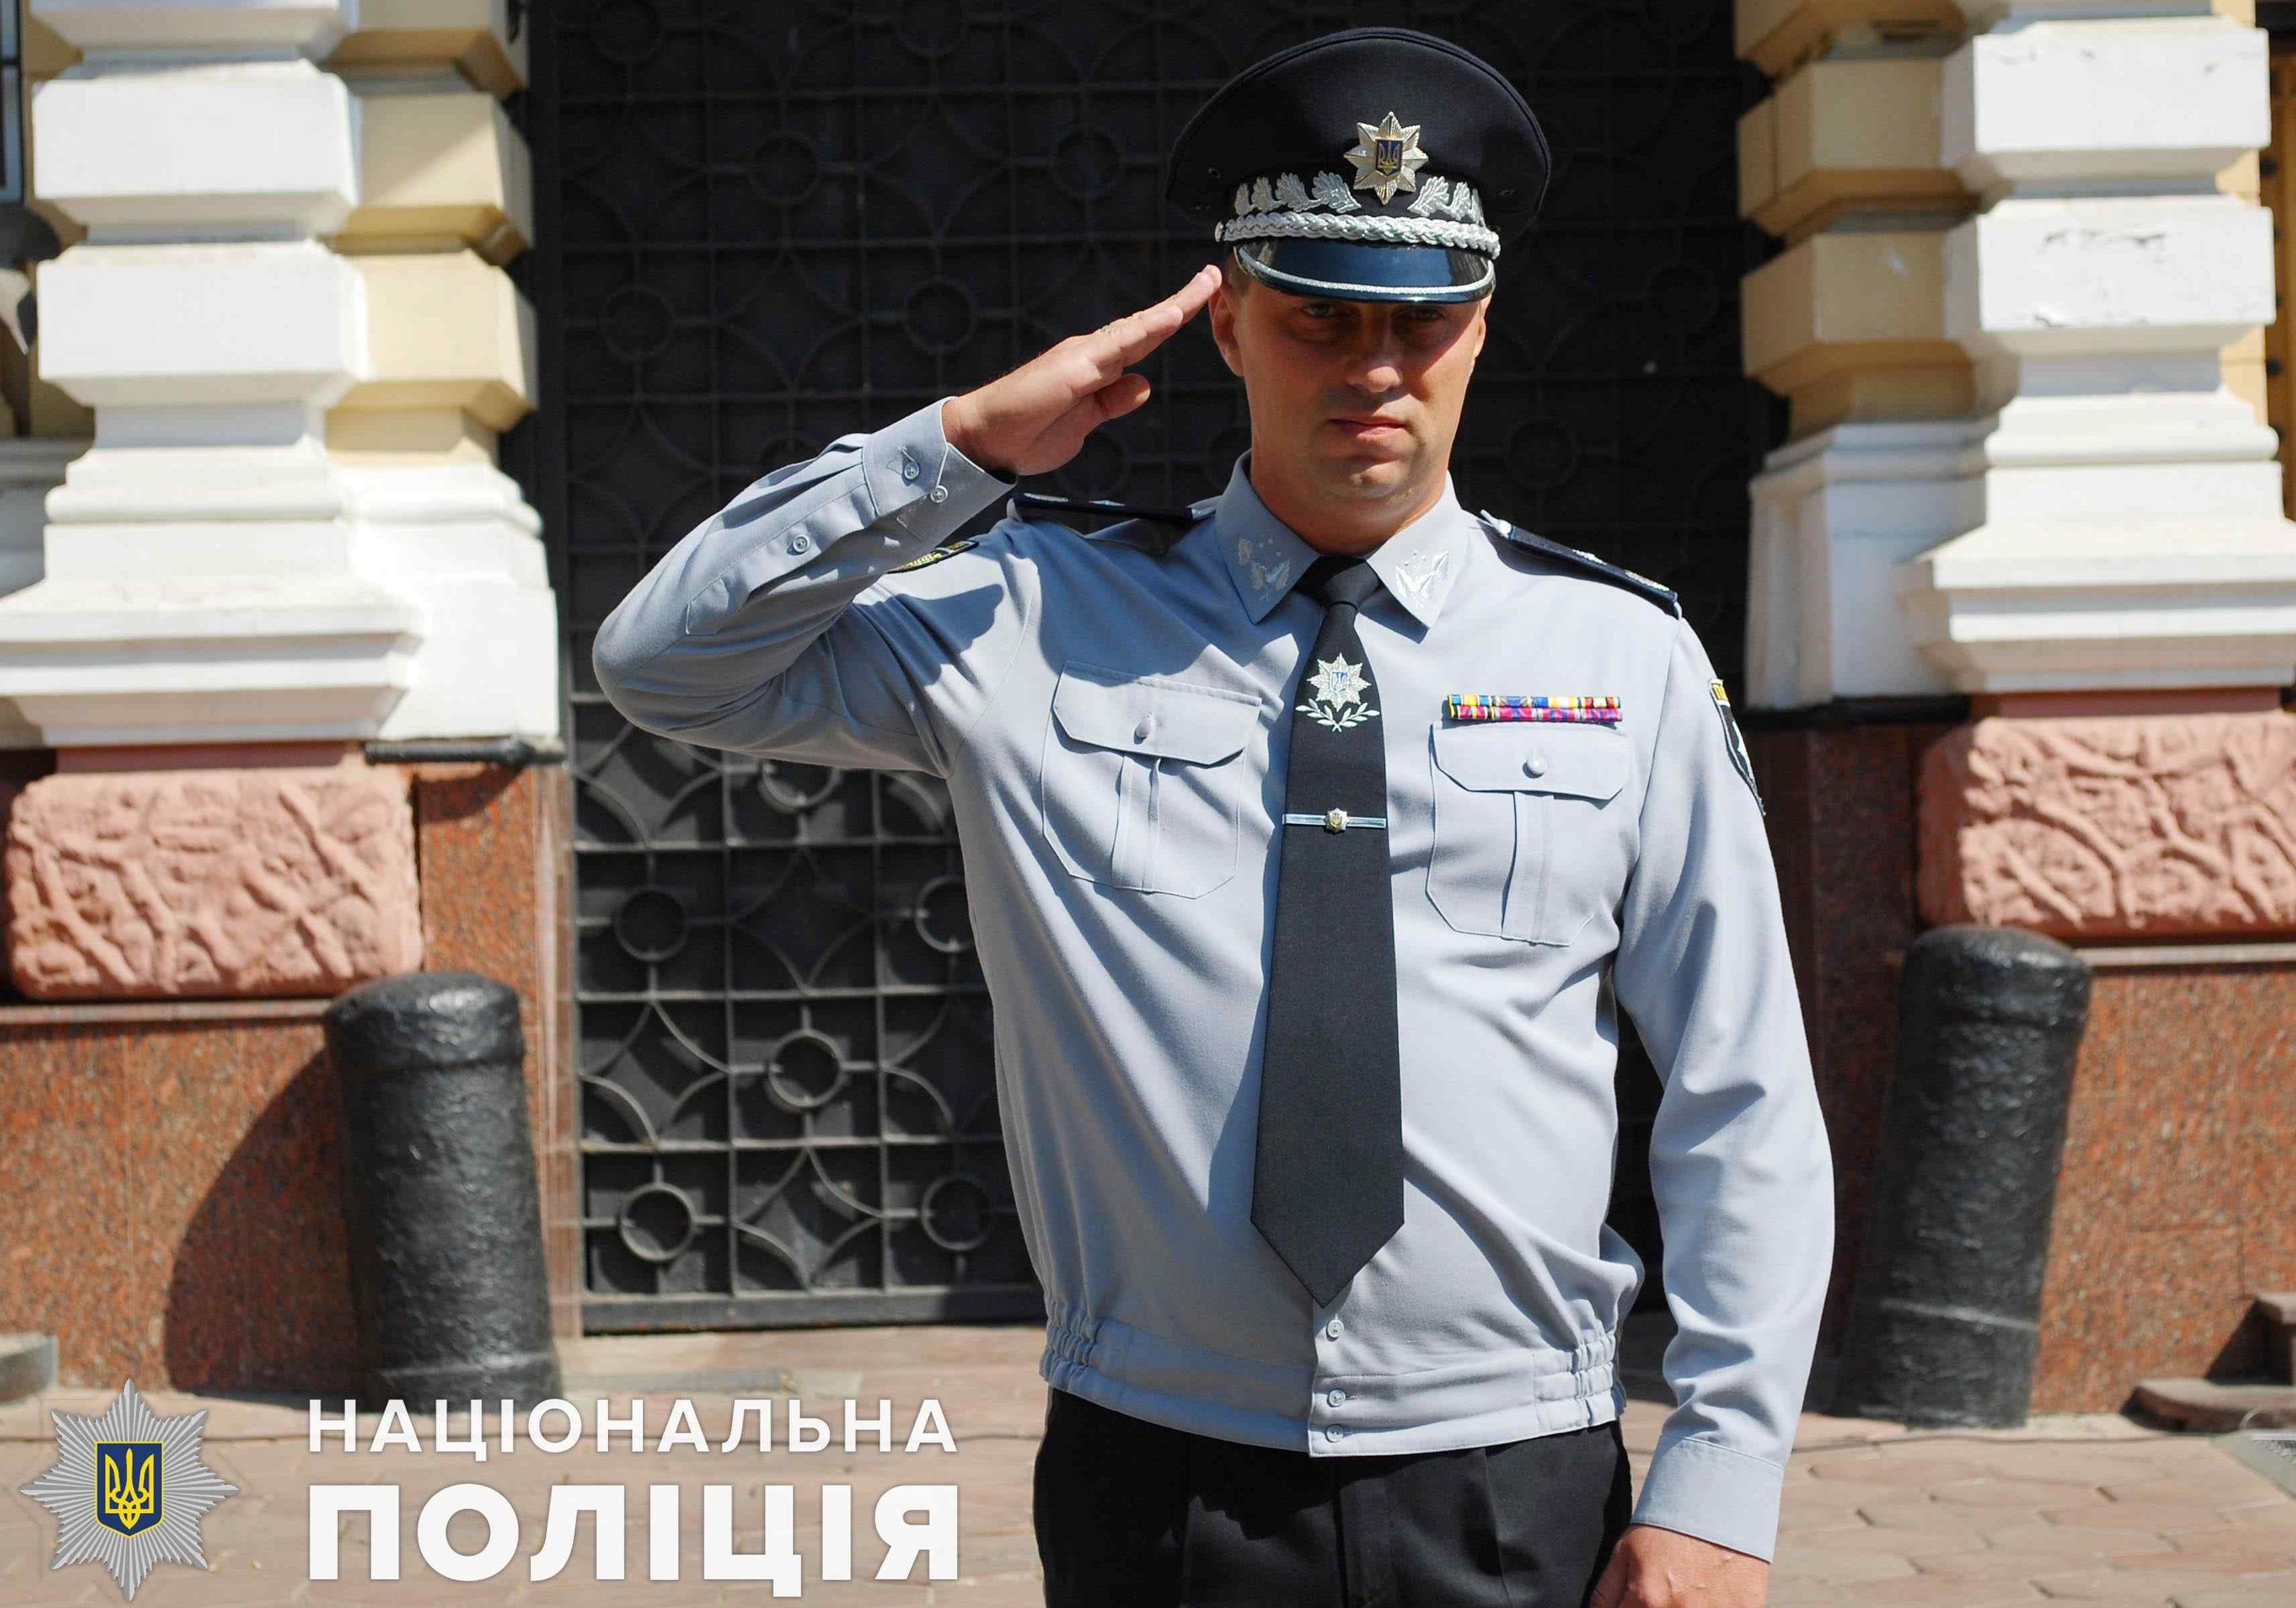 Фото: полиция Одессы